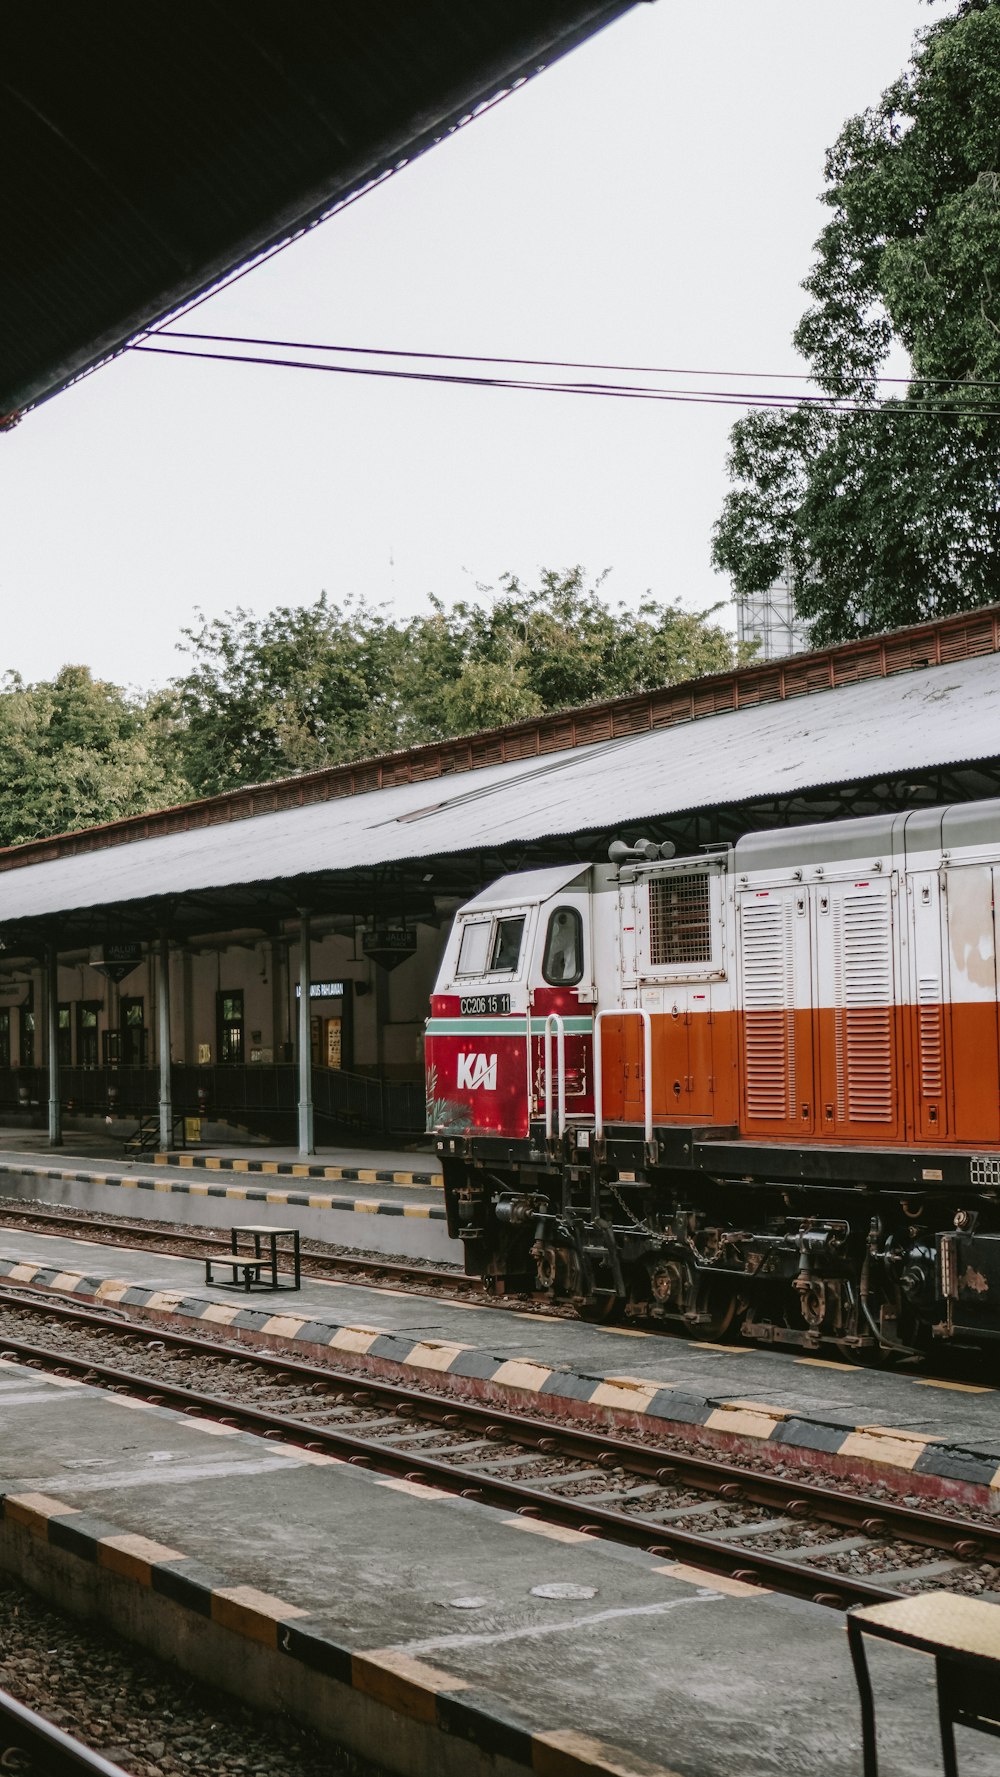 Un train rouge et blanc entrant dans une gare